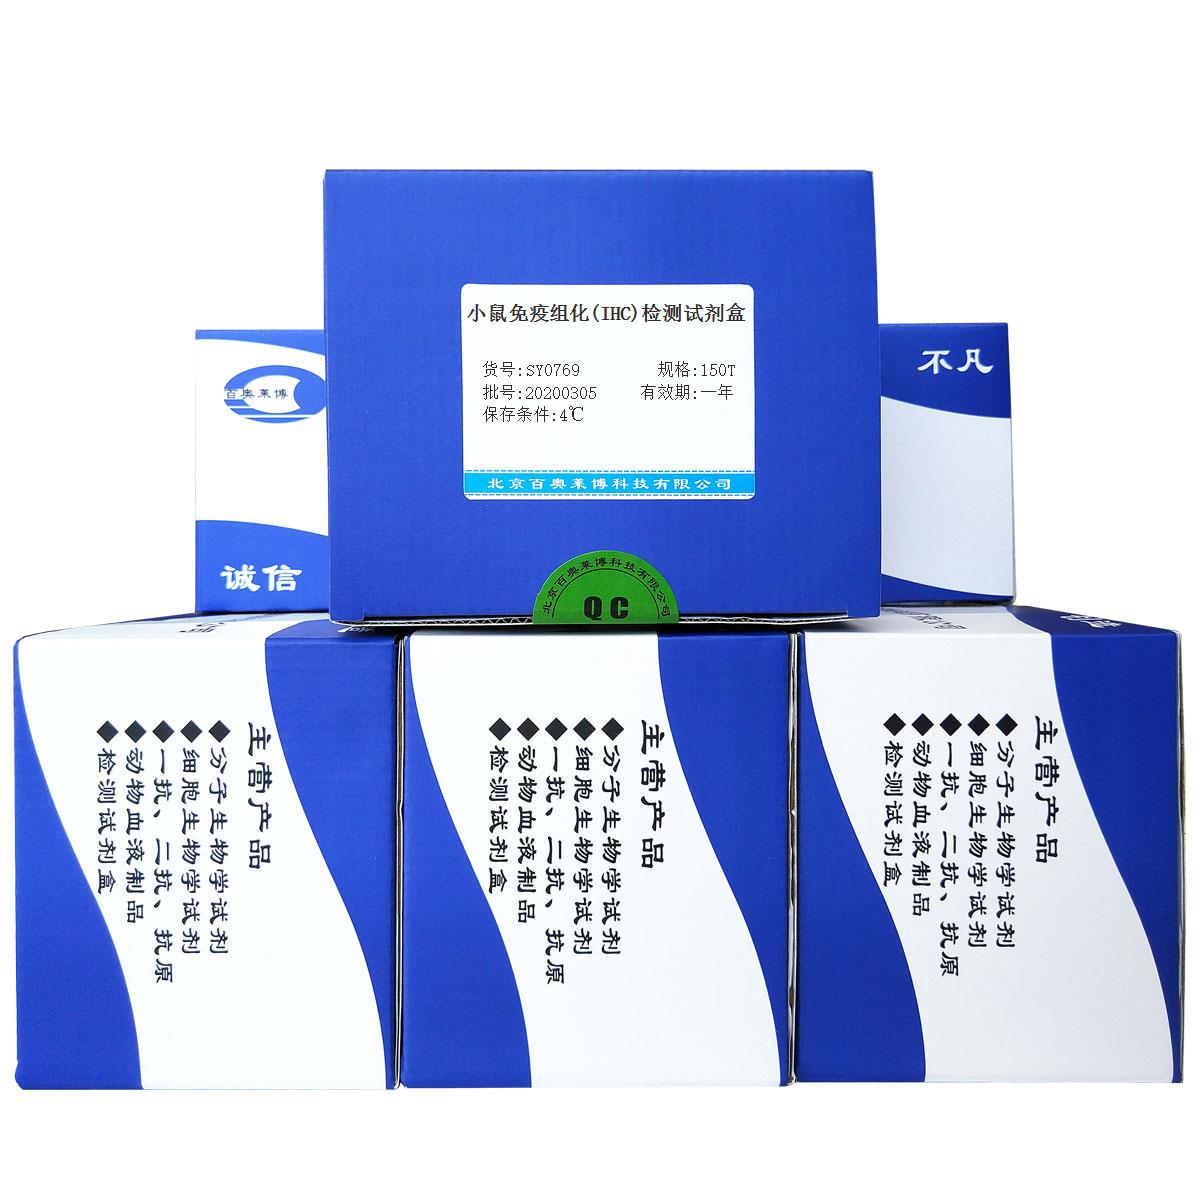 小鼠免疫组化(IHC)检测试剂盒北京供应商